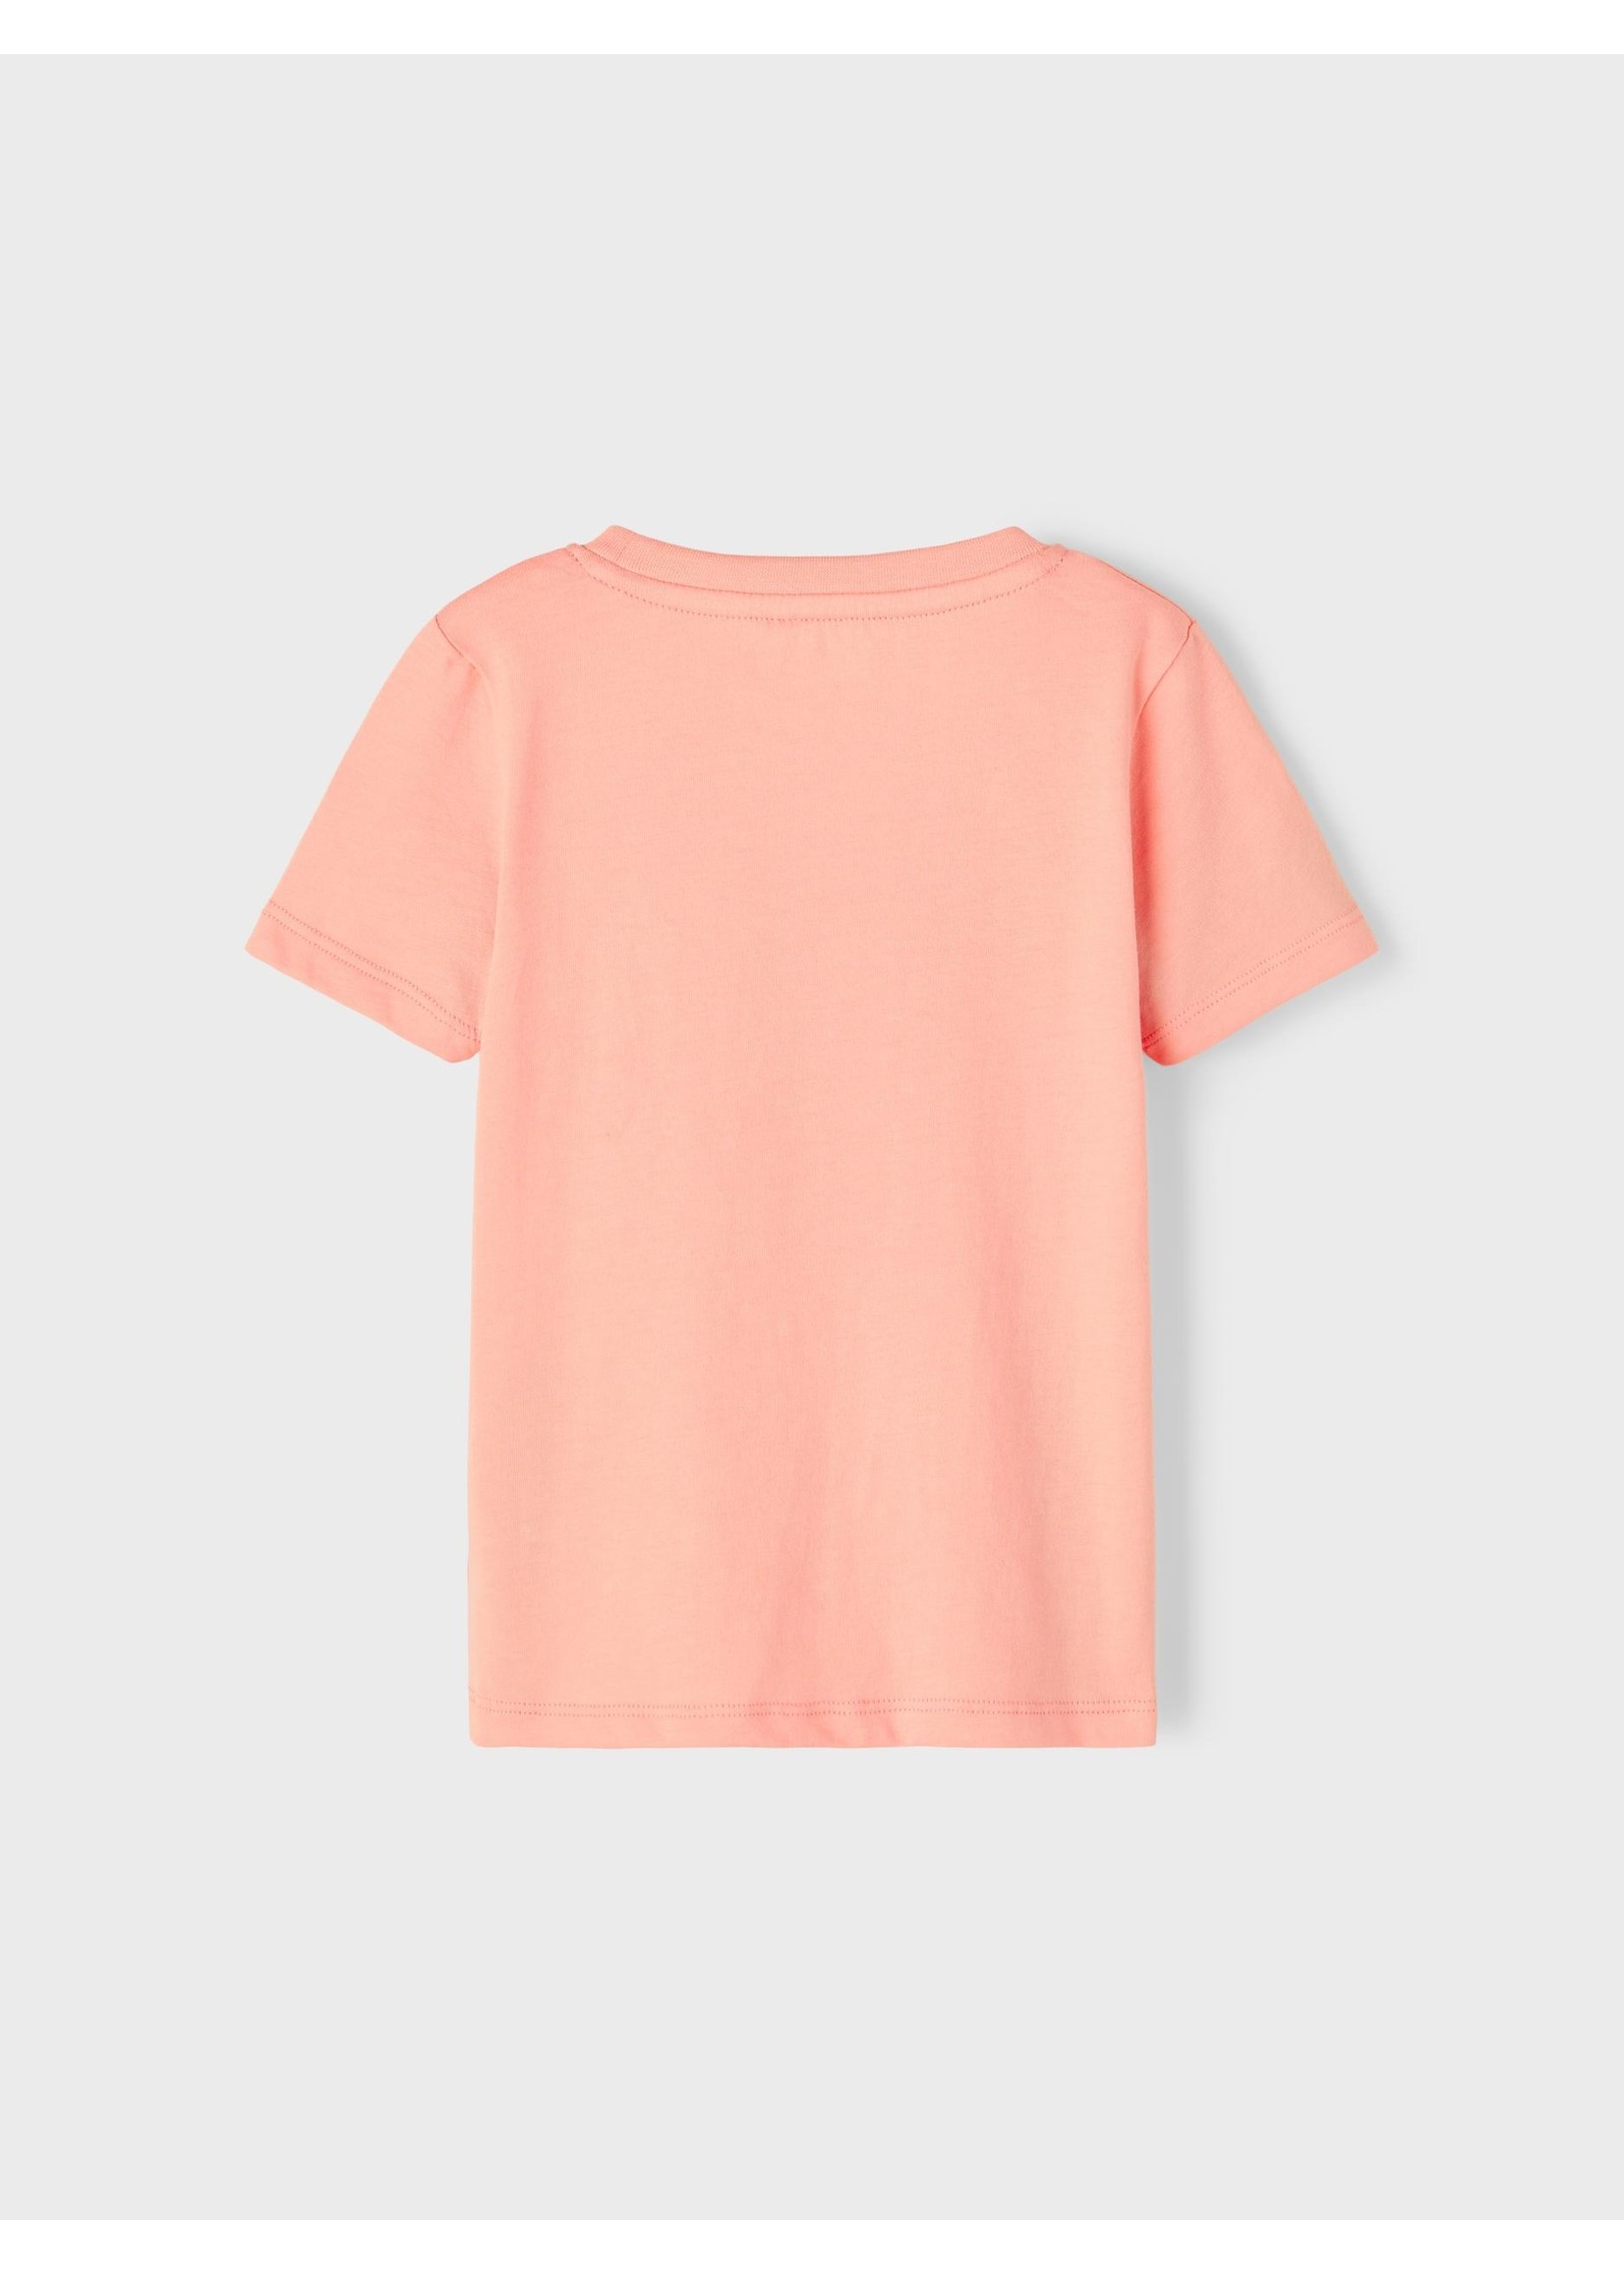 Name it Shirt Apricot Blush